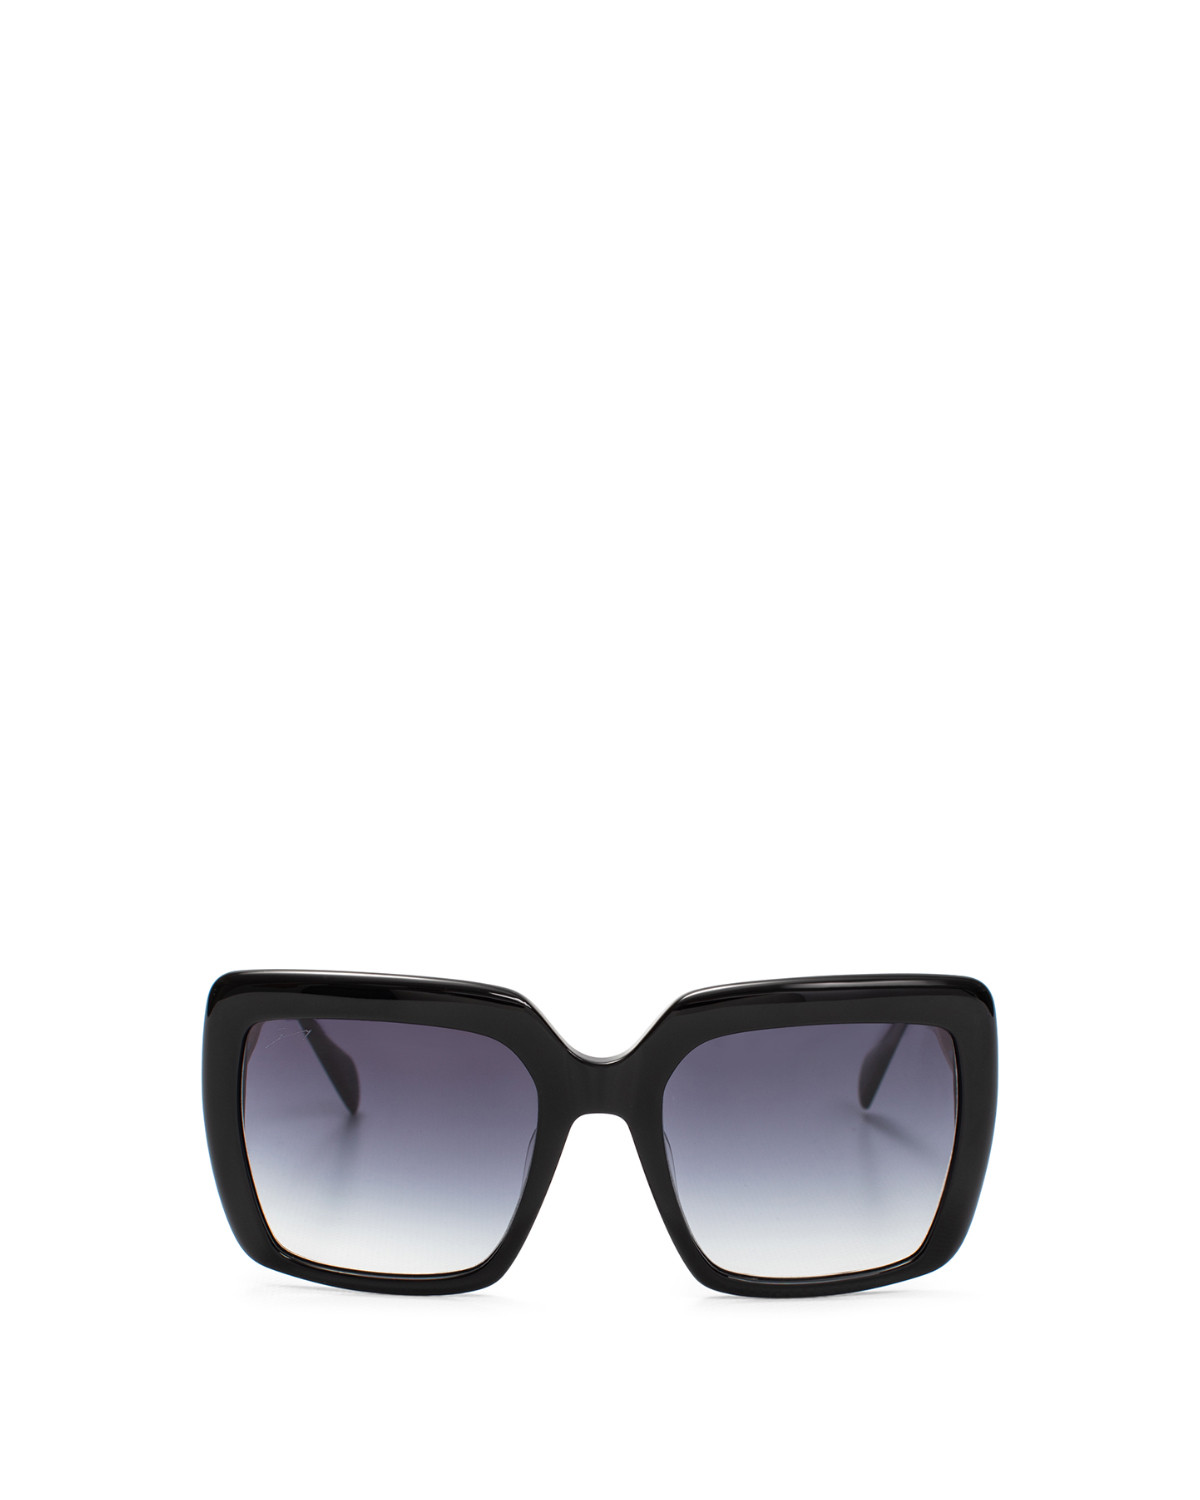 Black square acetate sunglasses